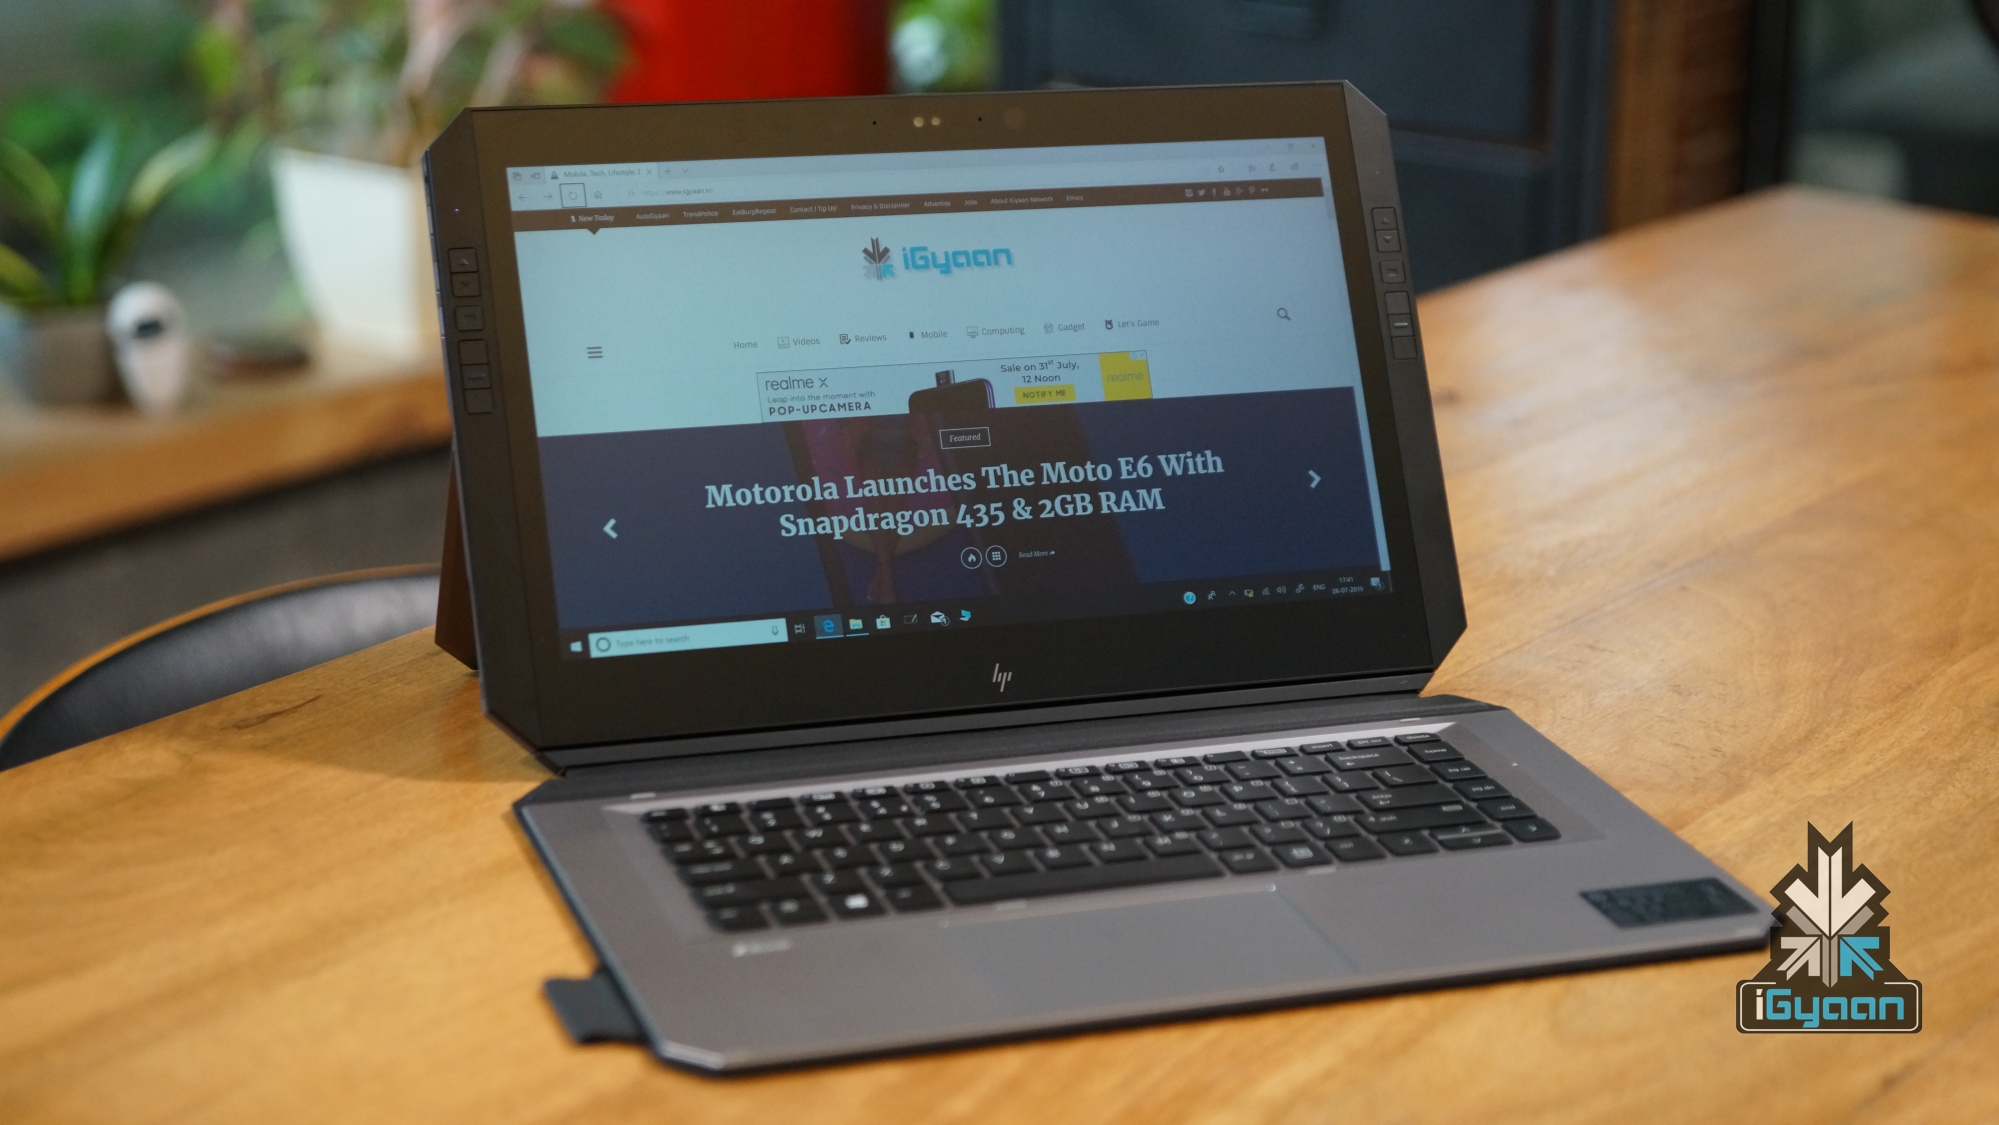 Purper Veilig knal HP Zbook X2 G4 Unboxing & Hands On, Specs & Features | iGyaan